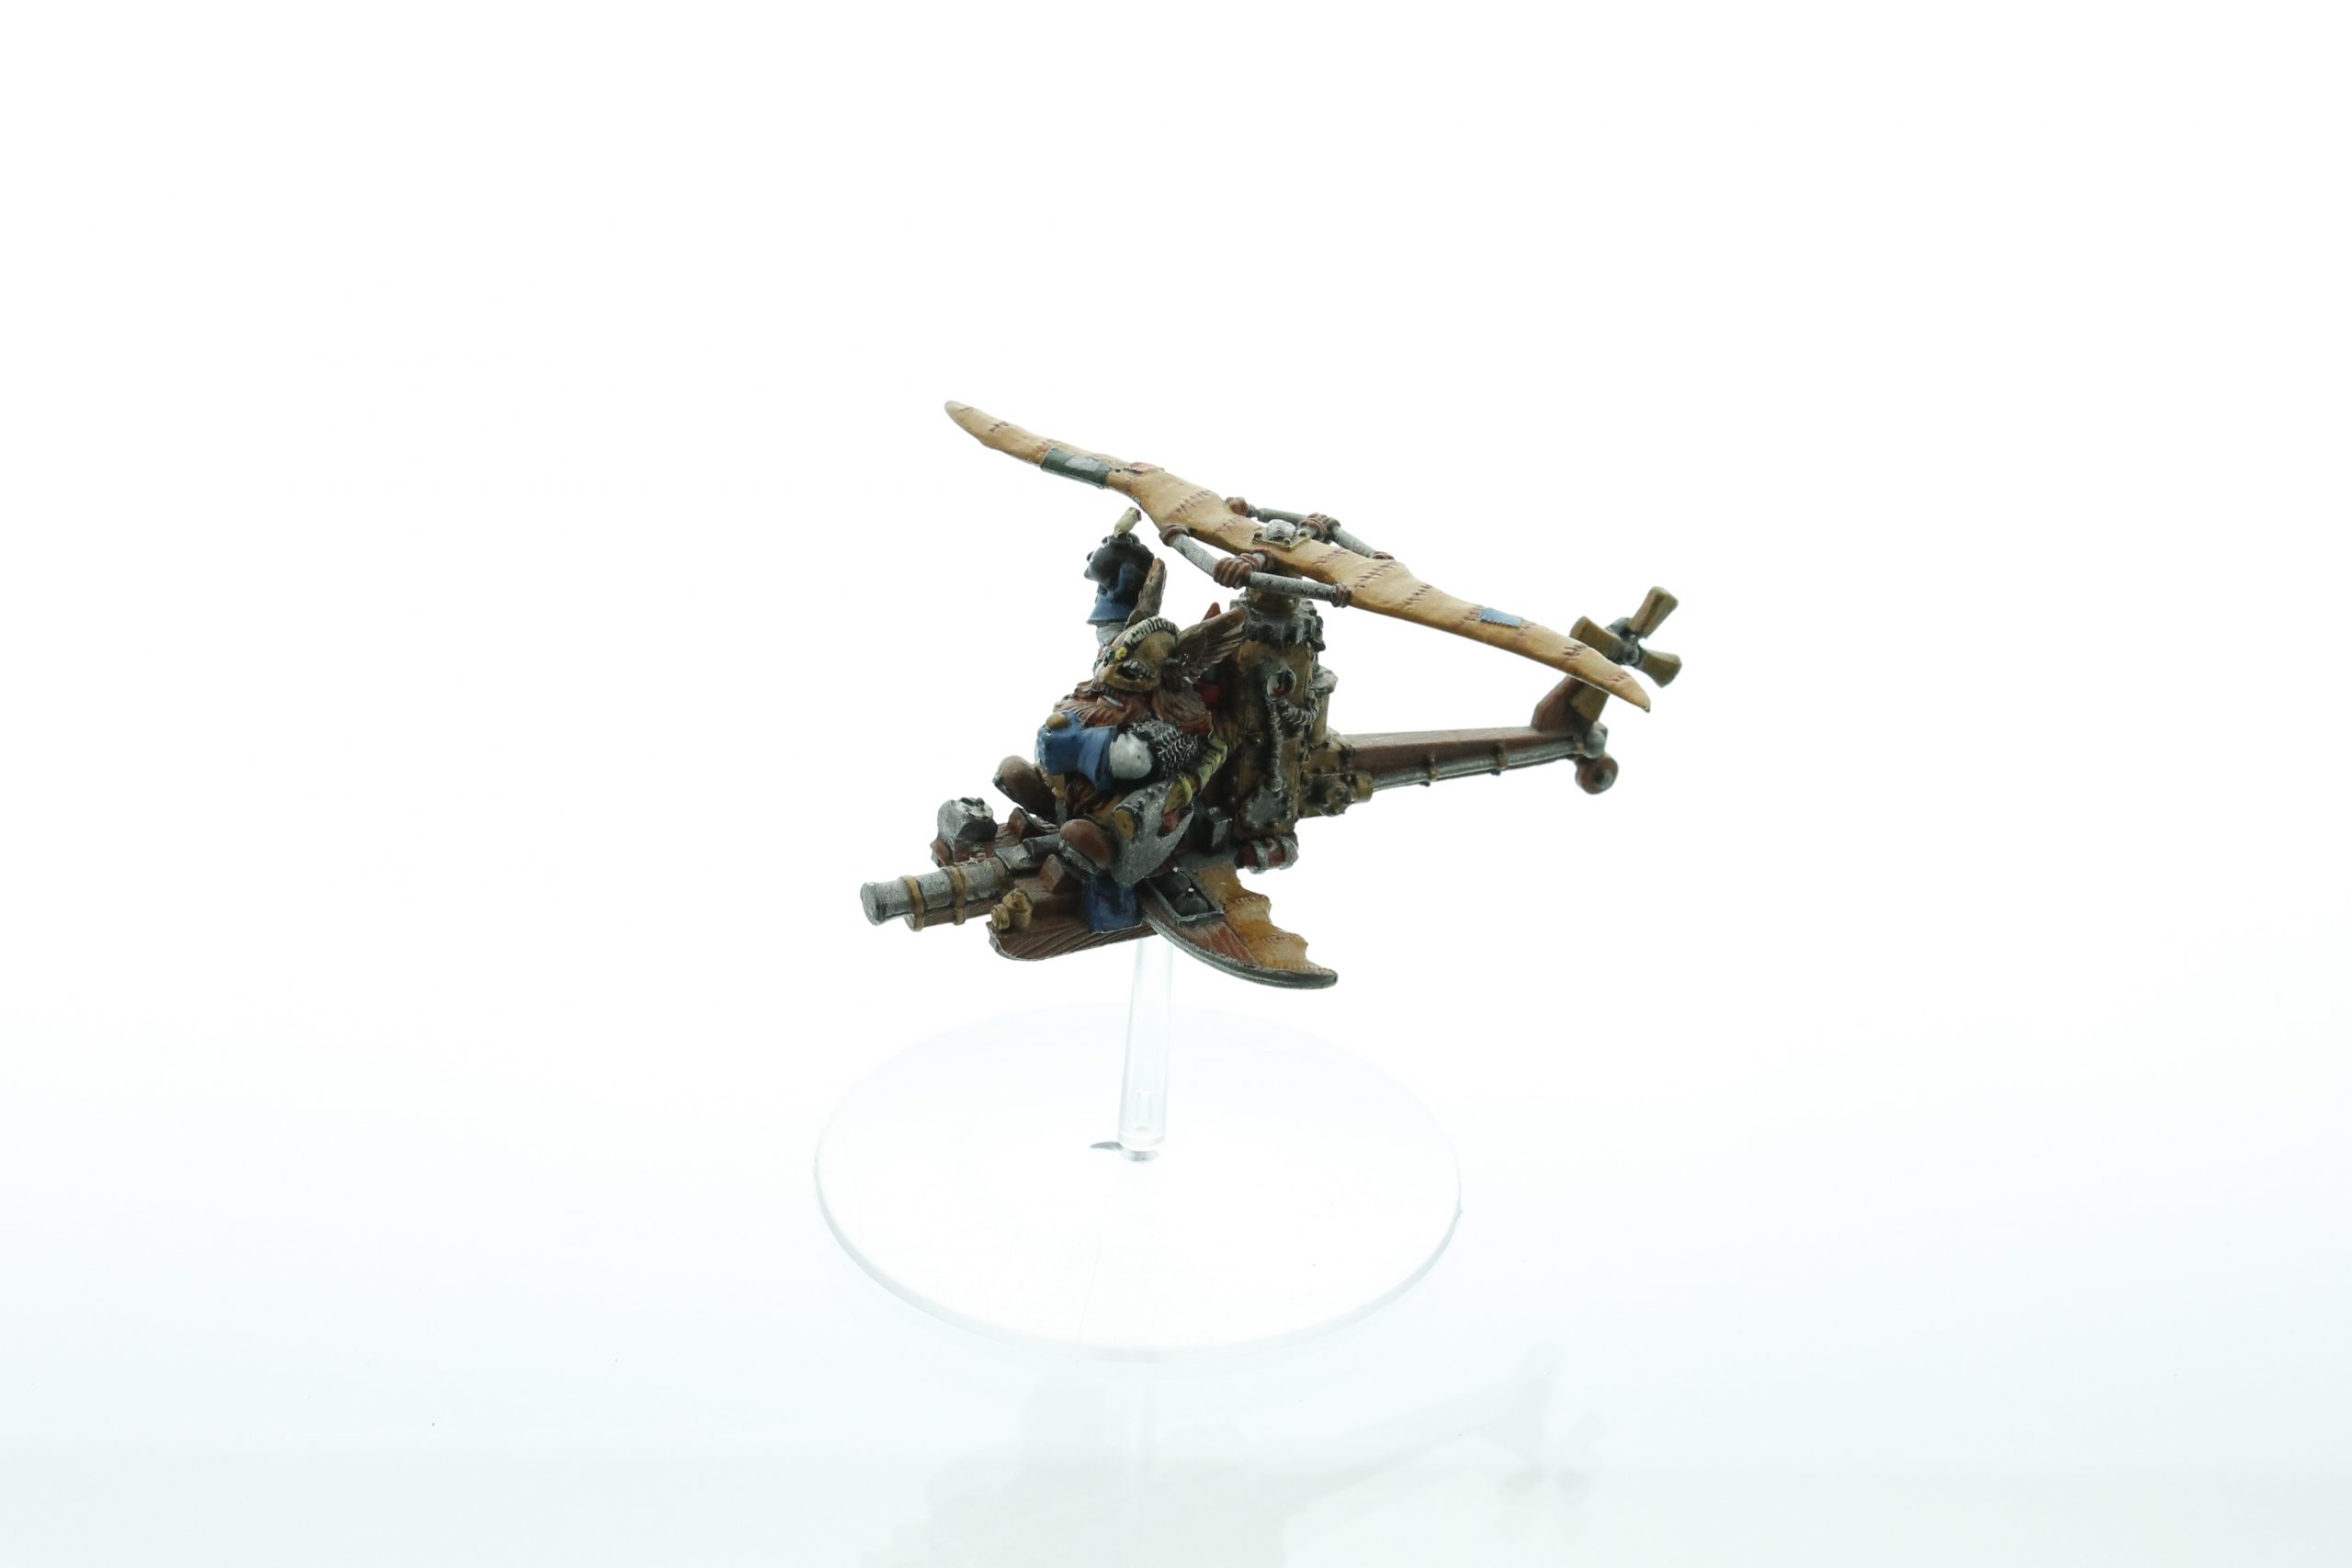 dwarf gyrocopter